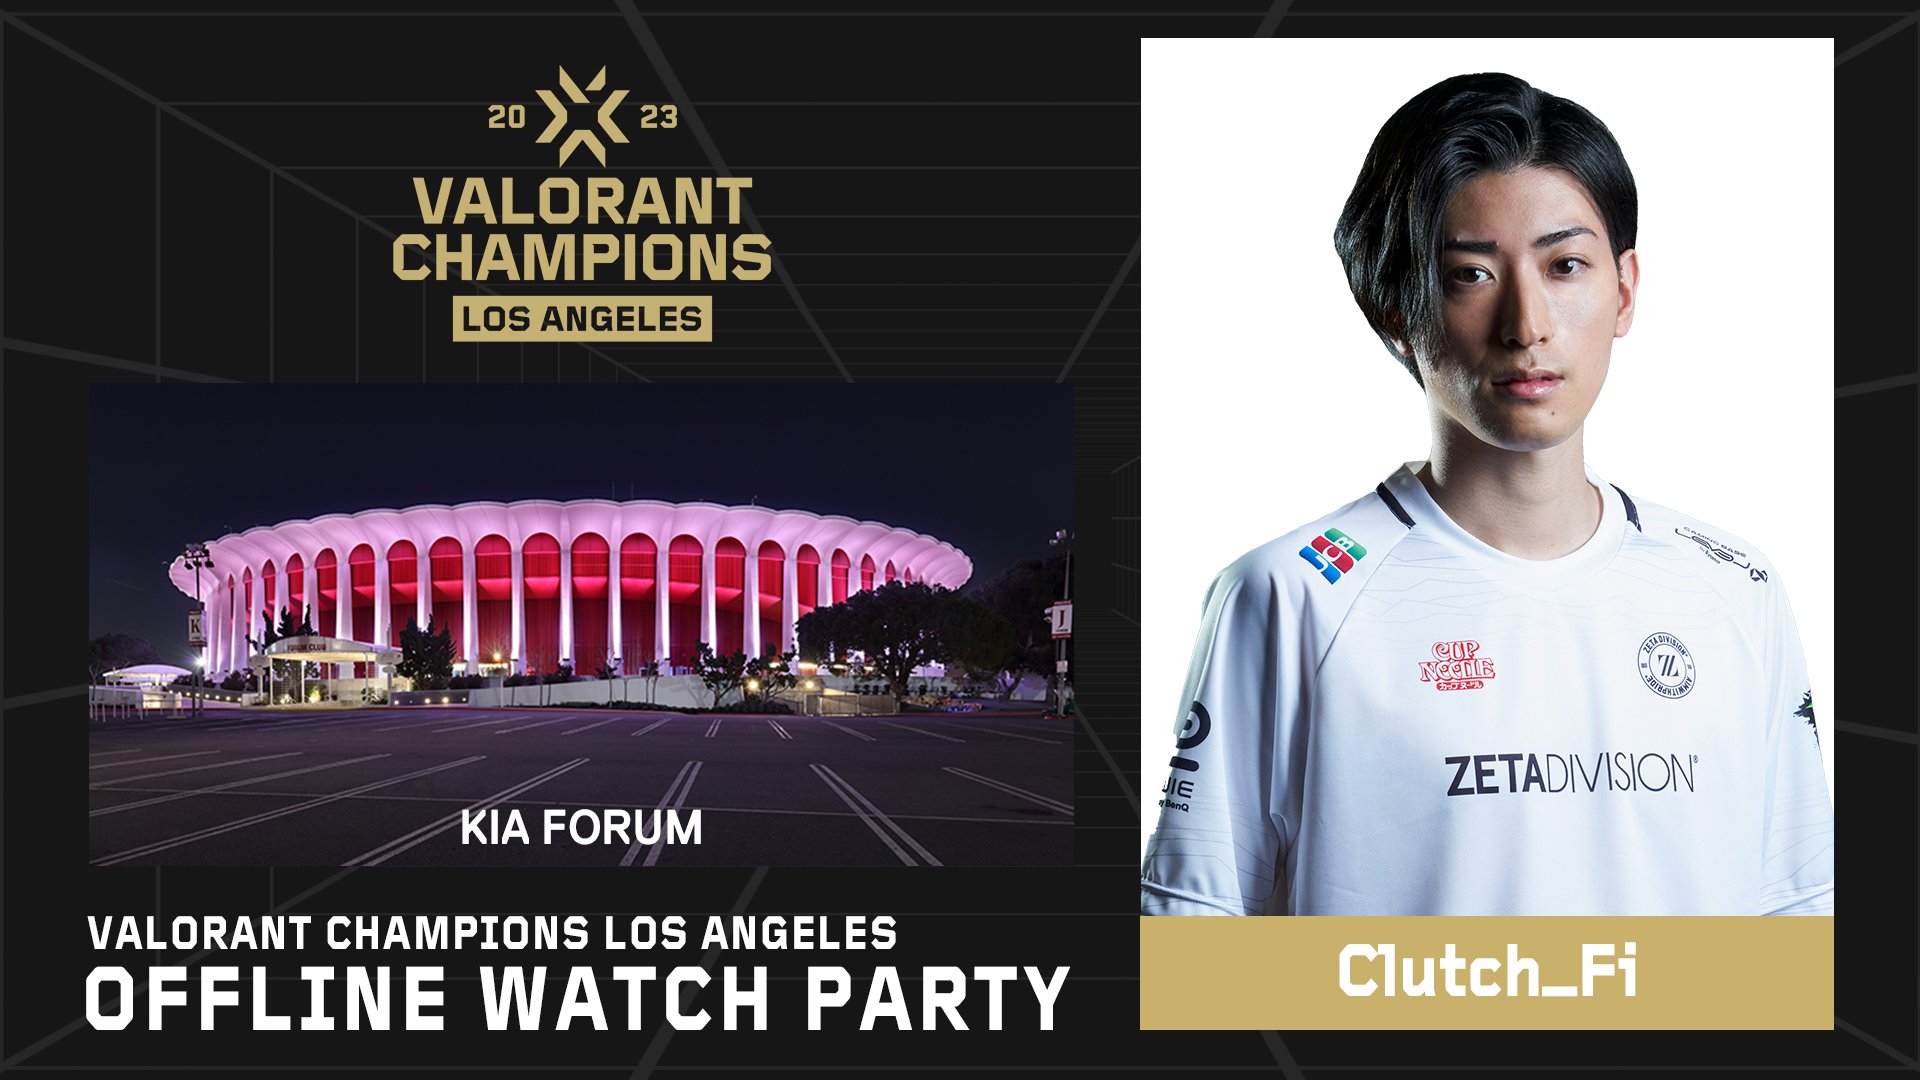 出演情報 – Clutch_Fiが『VALORANT Champions Los Angeles Offline Watch Party』を実施